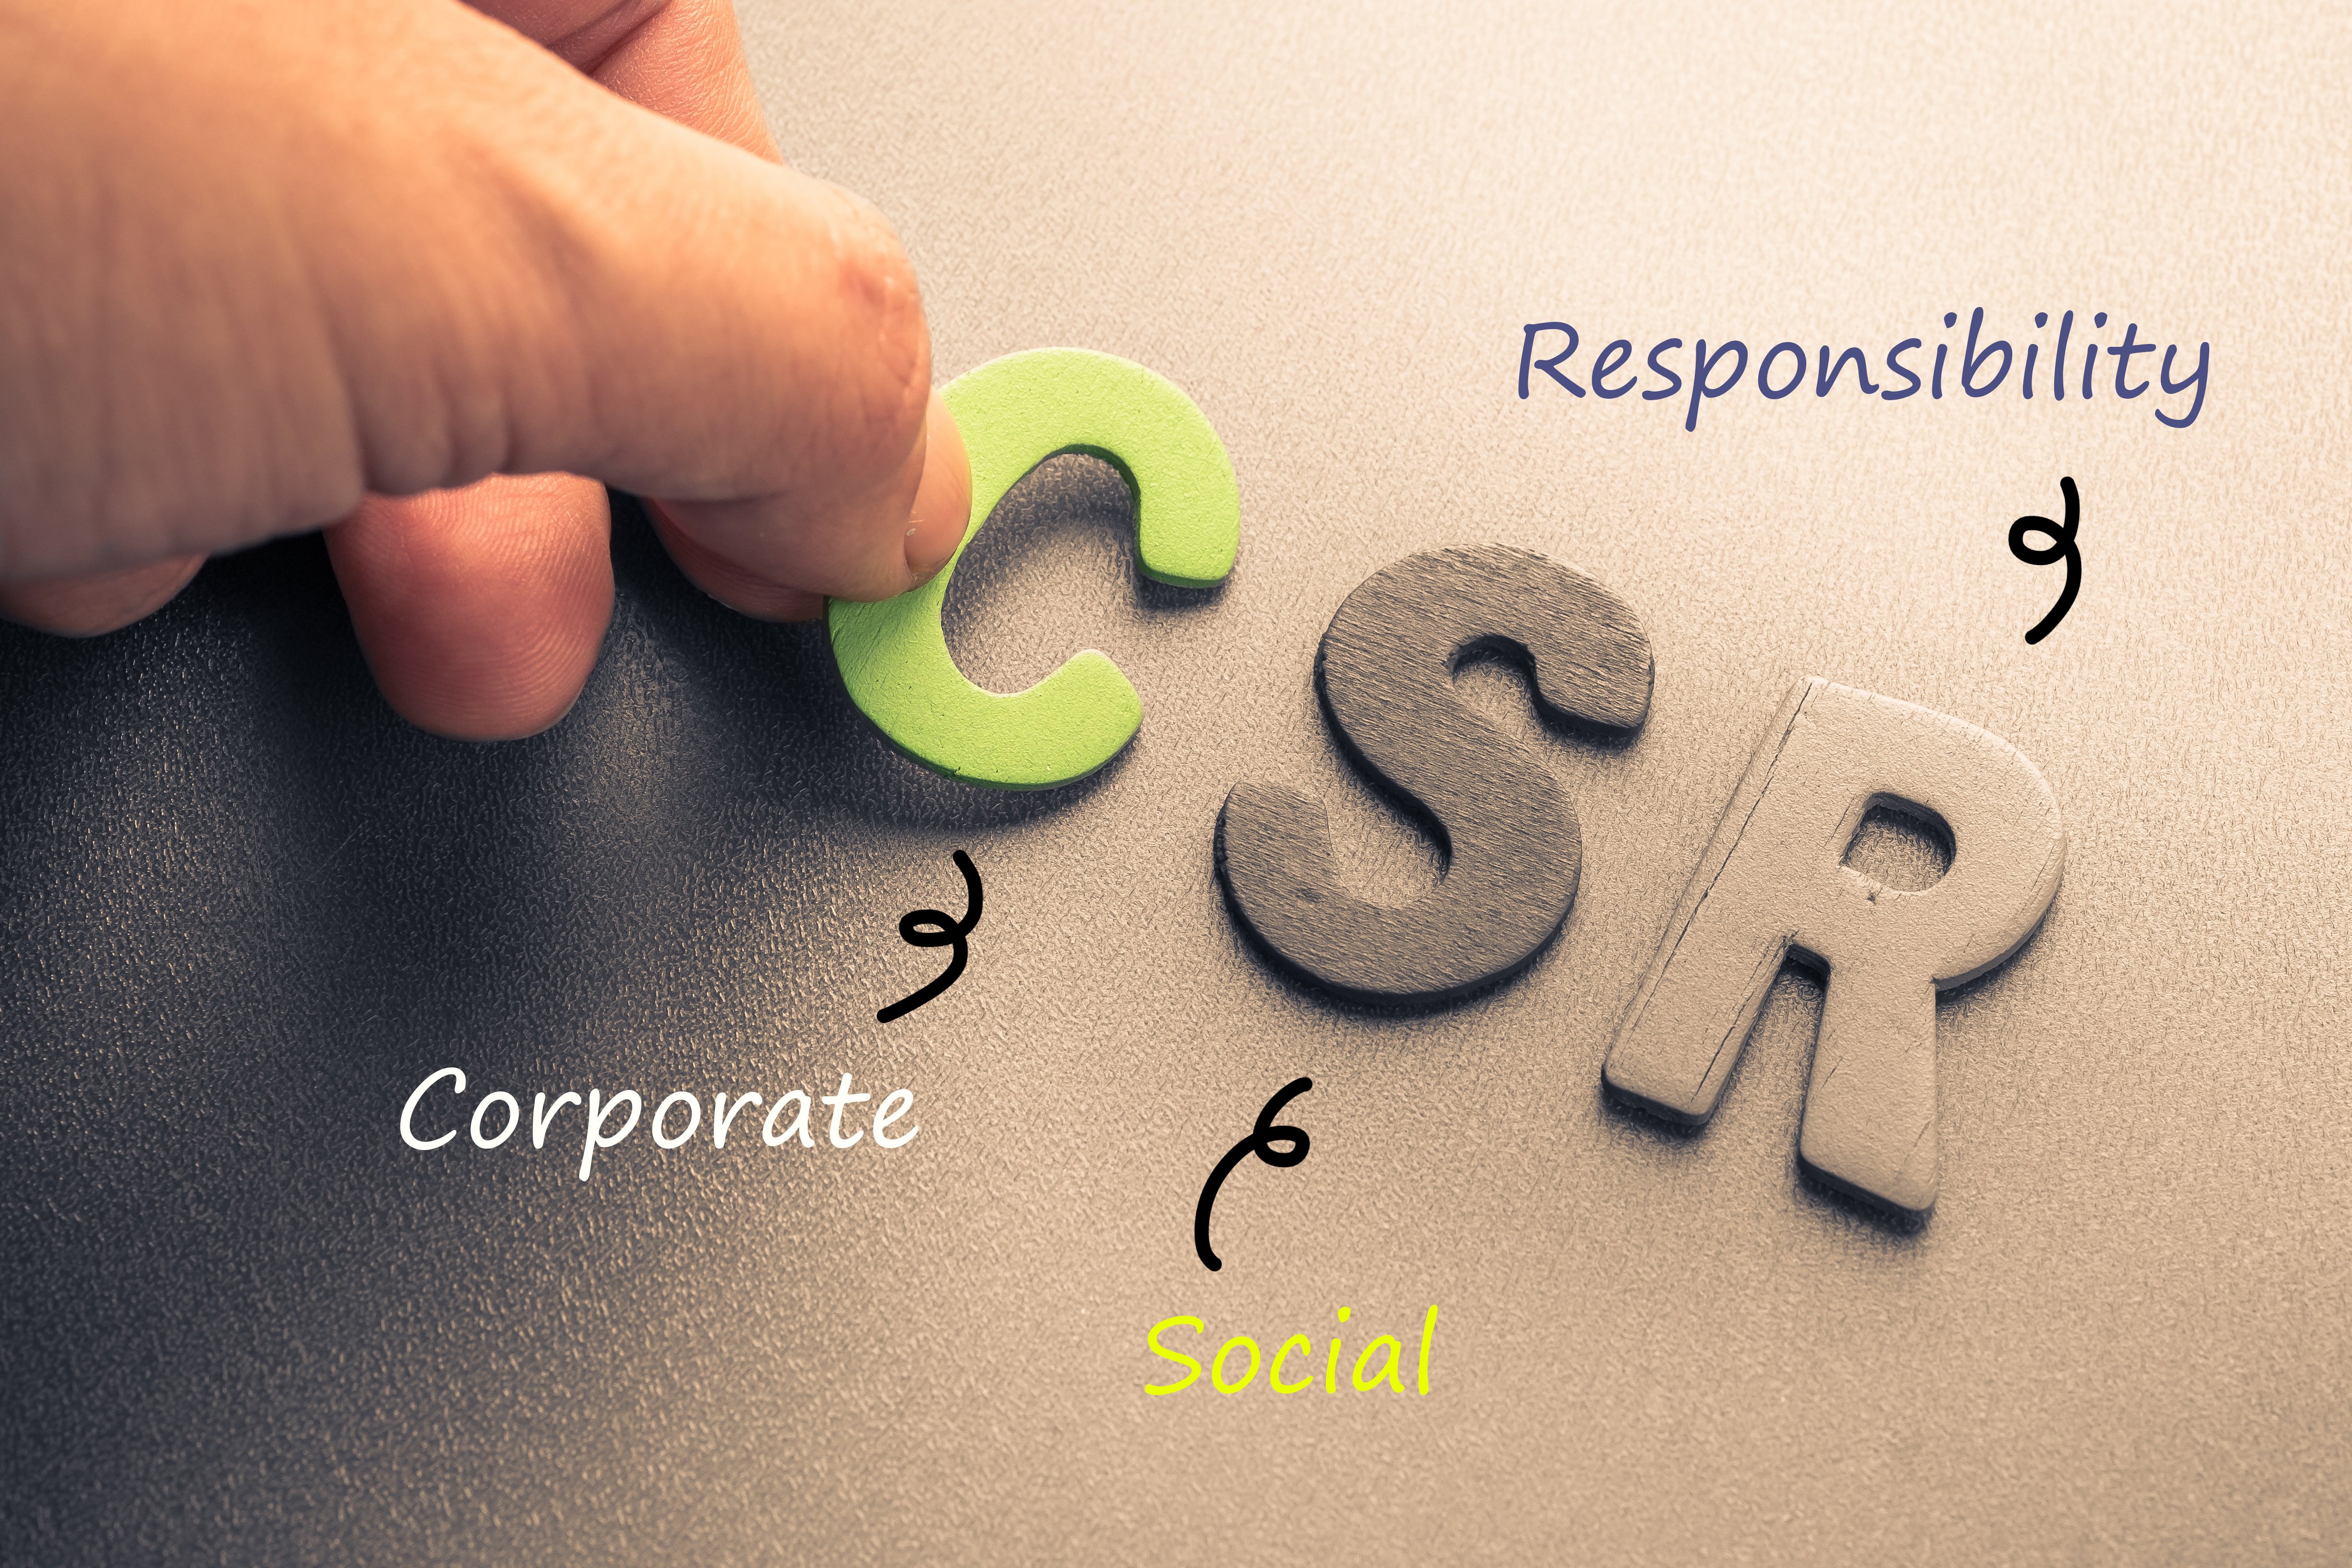 Σημαντικό κεφάλαιο για τις επιχειρήσεις η Εταιρική Κοινωνική Ευθύνη